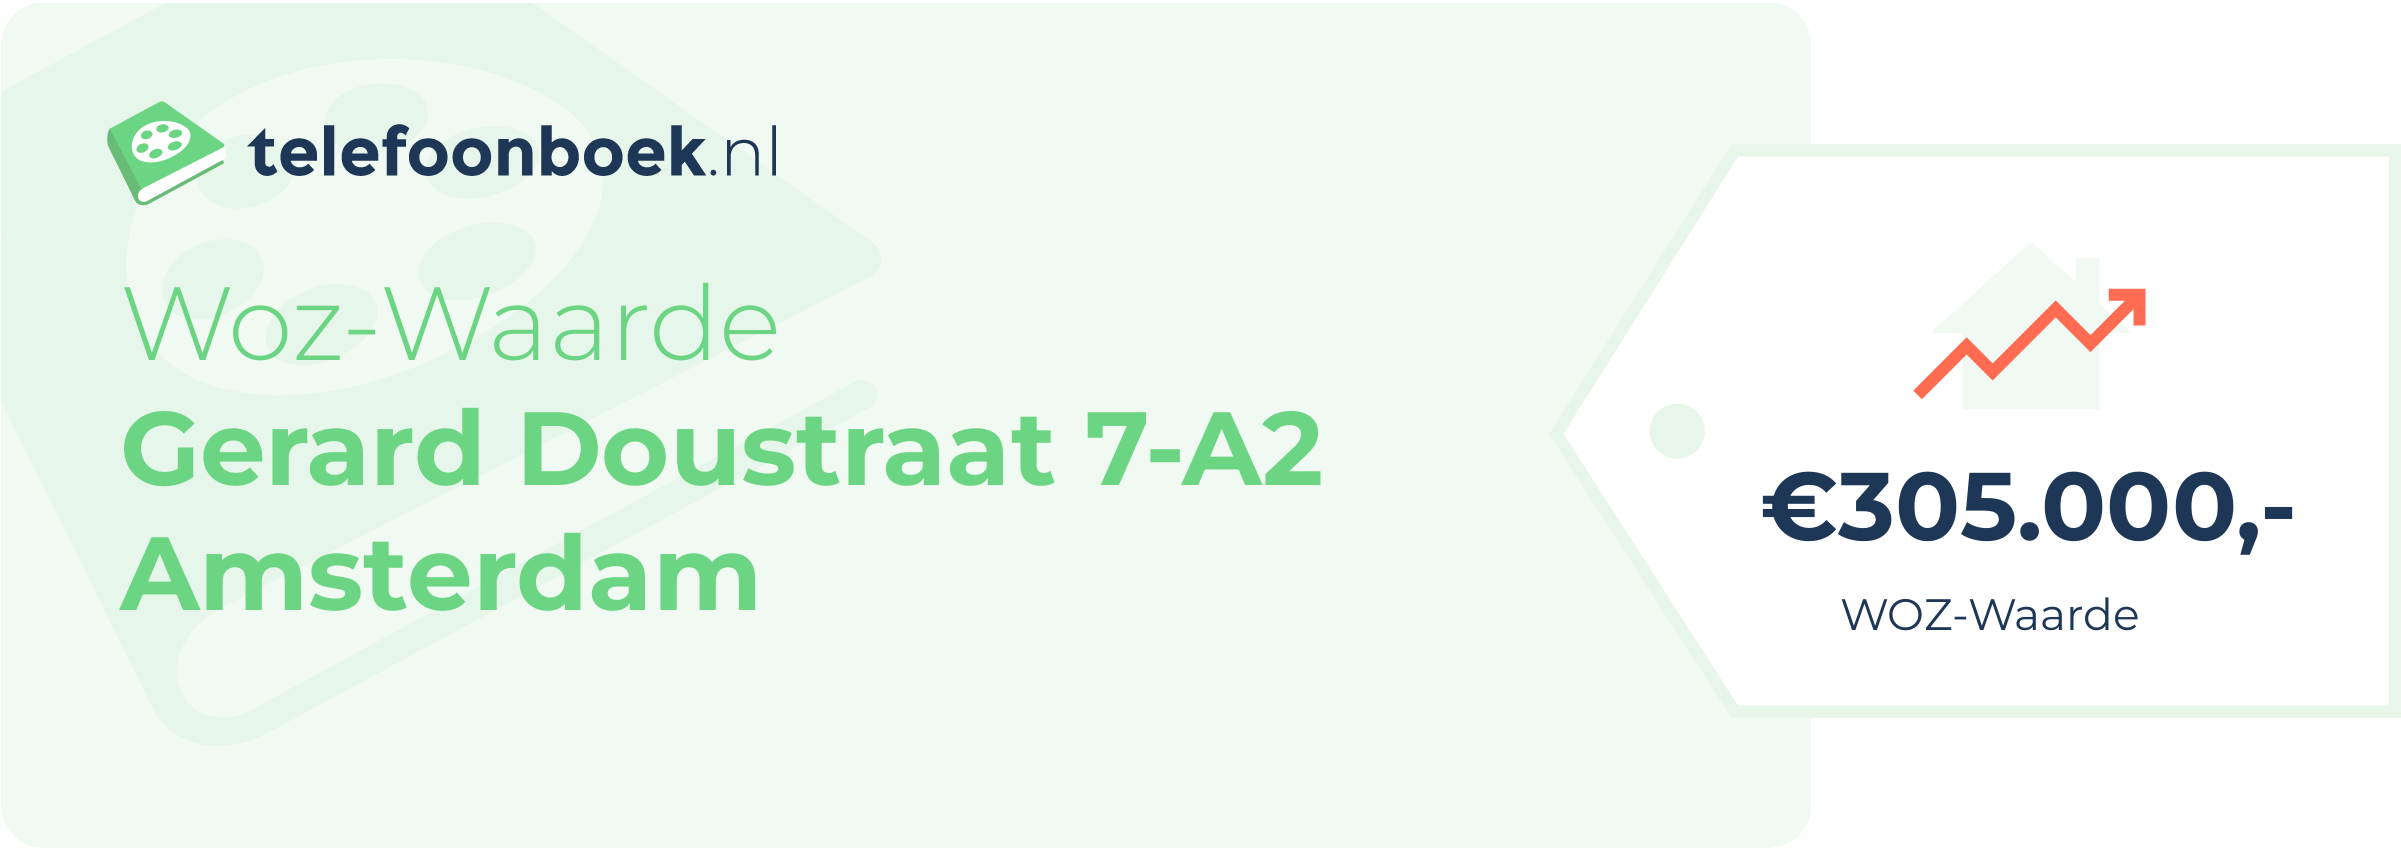 WOZ-waarde Gerard Doustraat 7-A2 Amsterdam